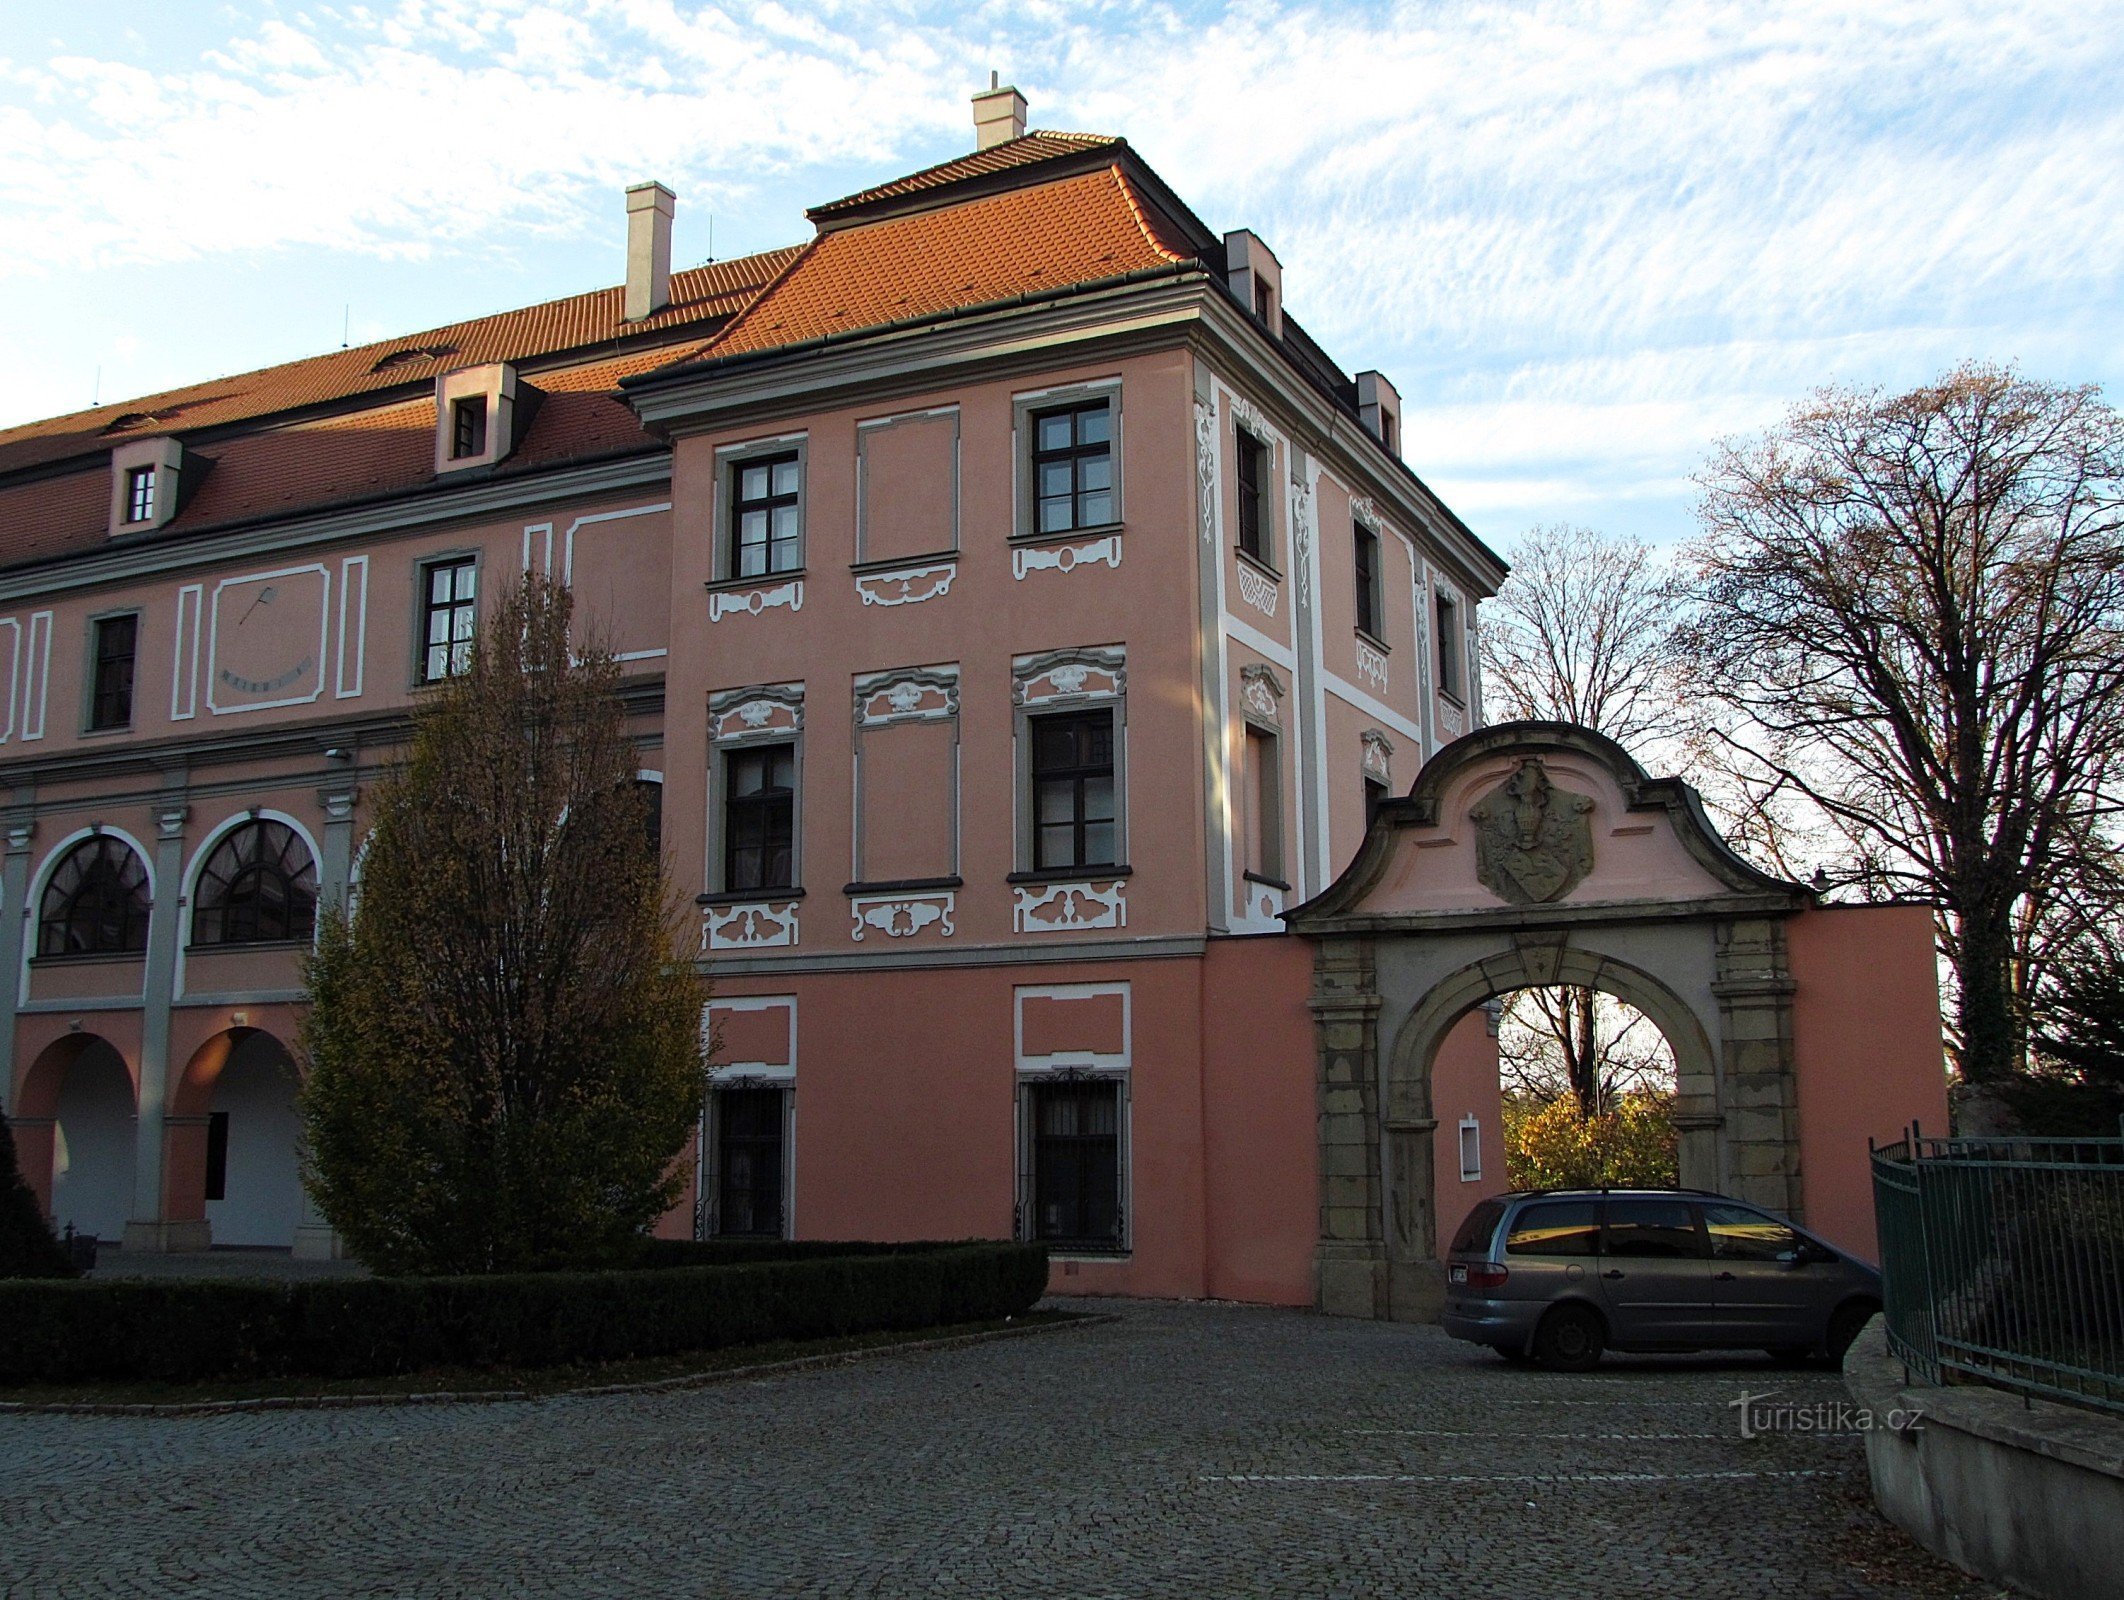 Valašské Meziříčí - Žerotín zamek w centrum miasta